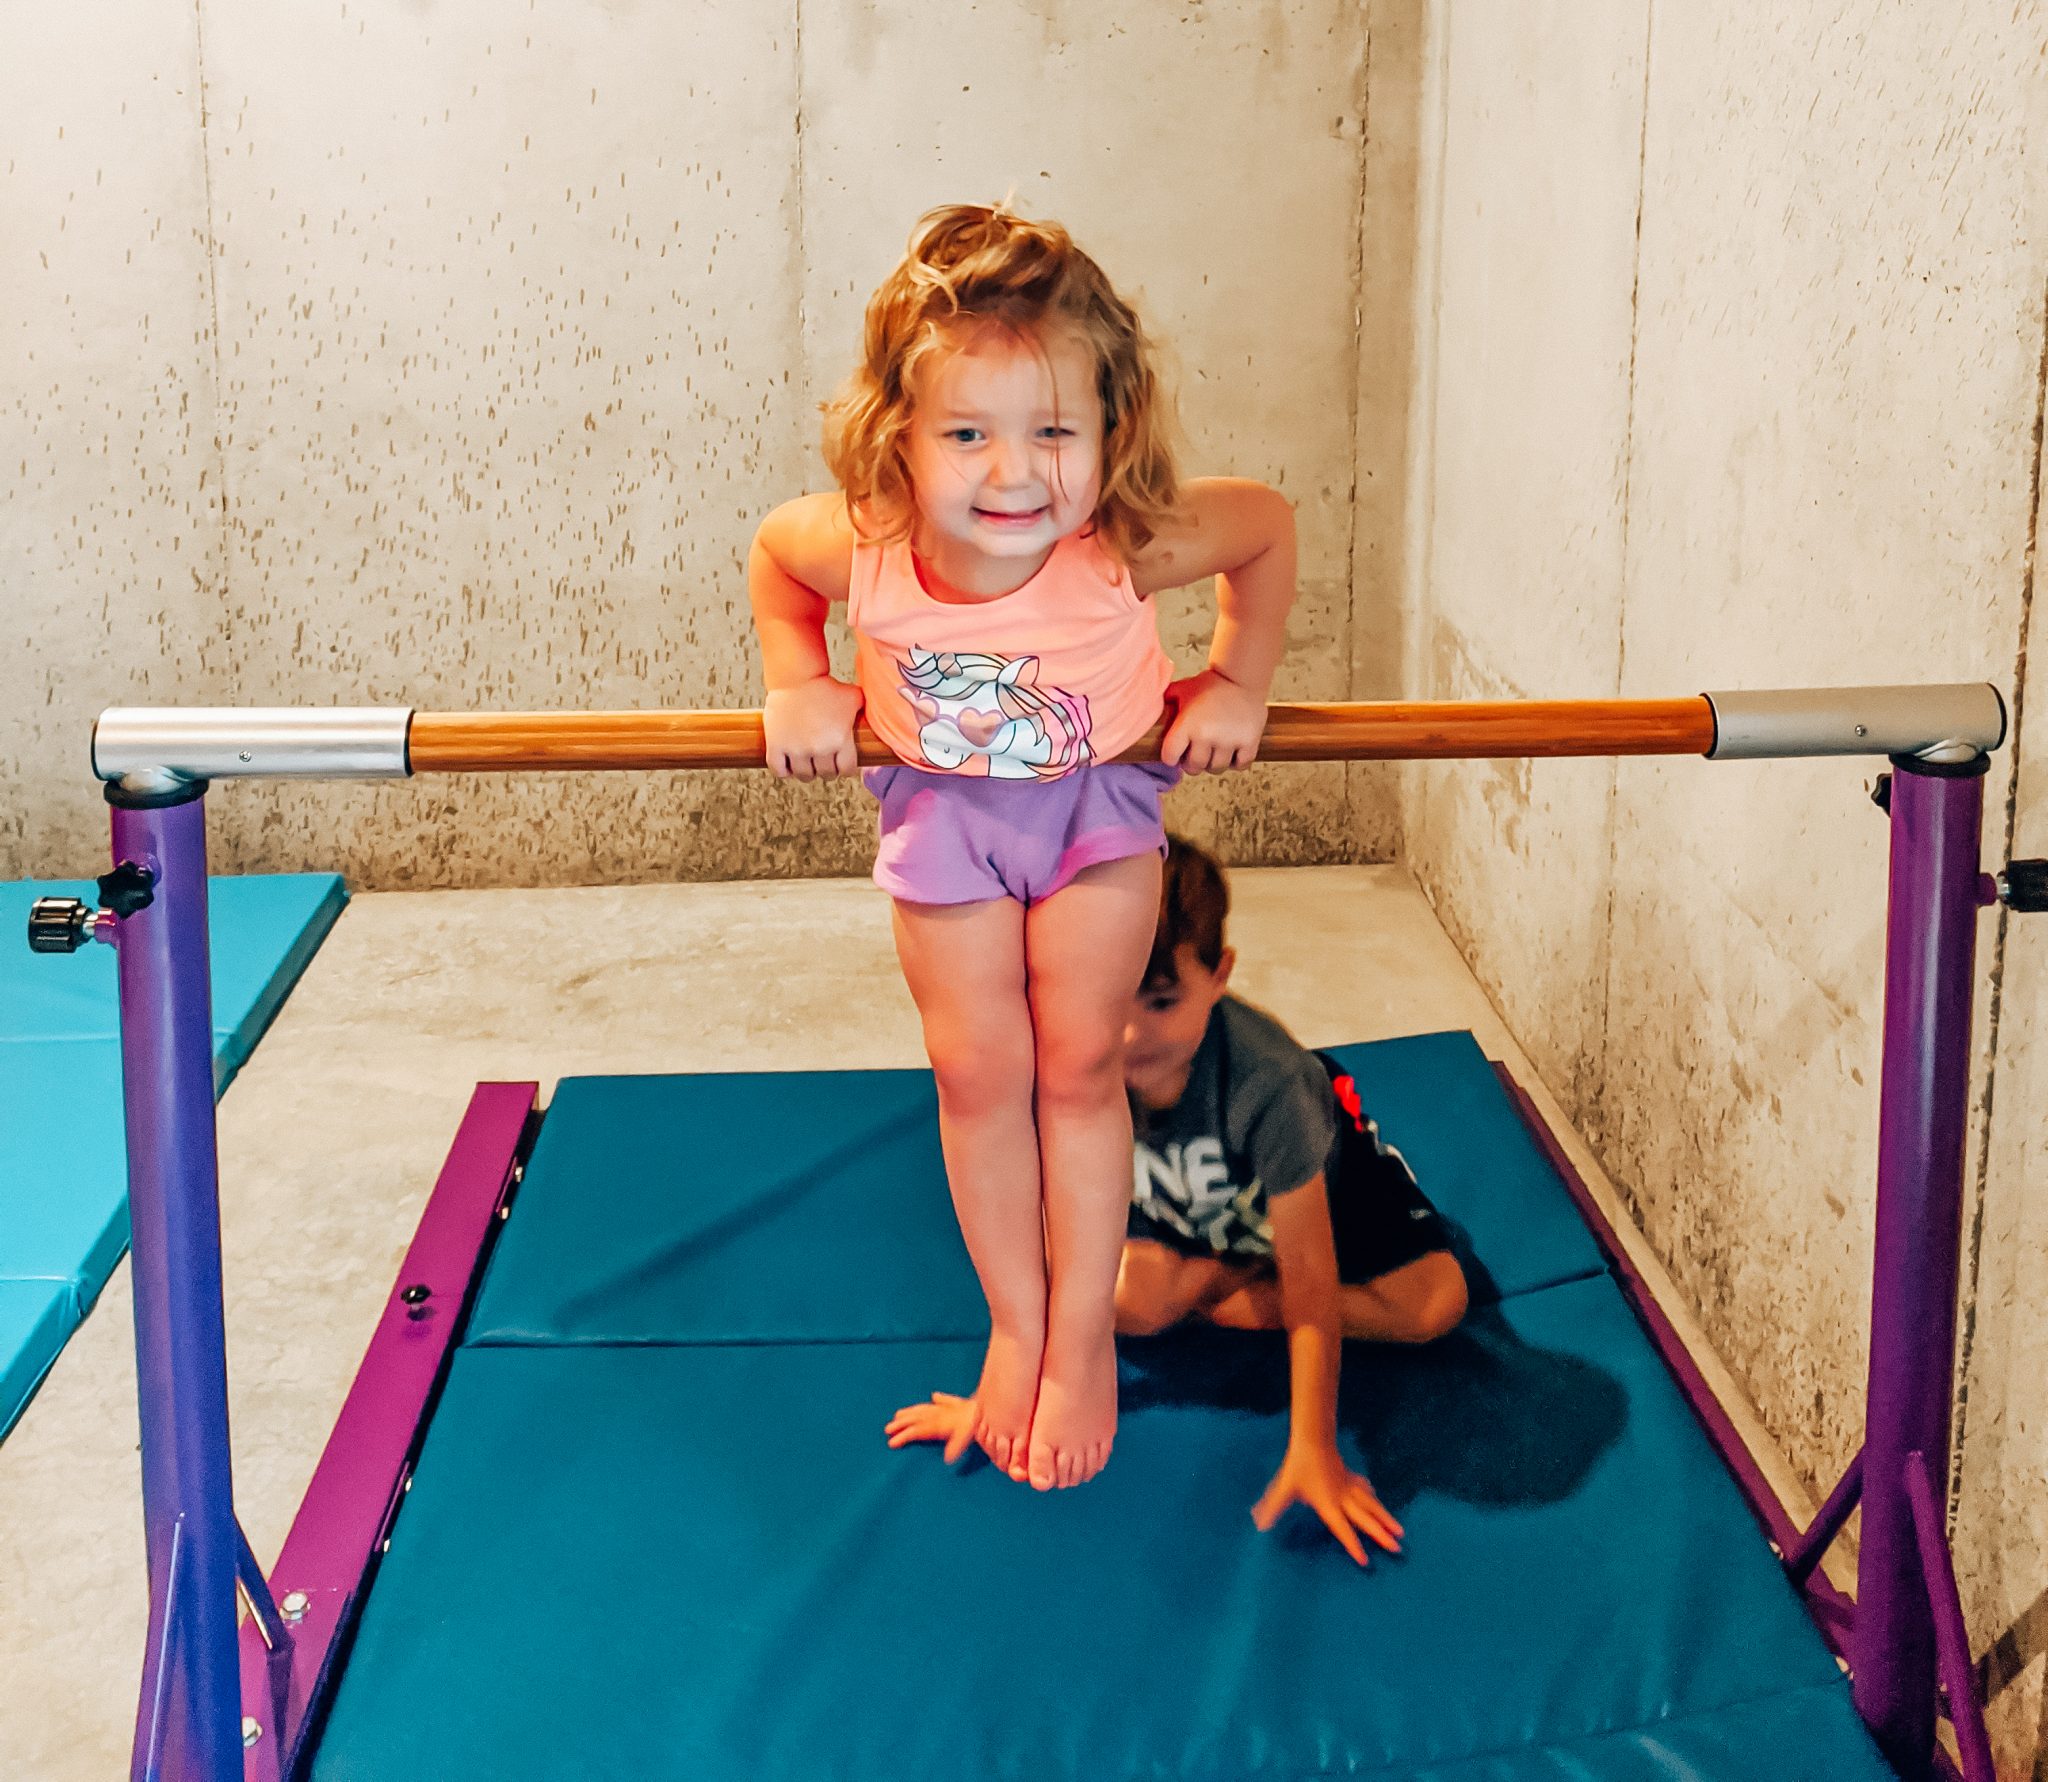 Best Gymnastics Equipment For Home Our Home Gymnastics Setup • Covet 